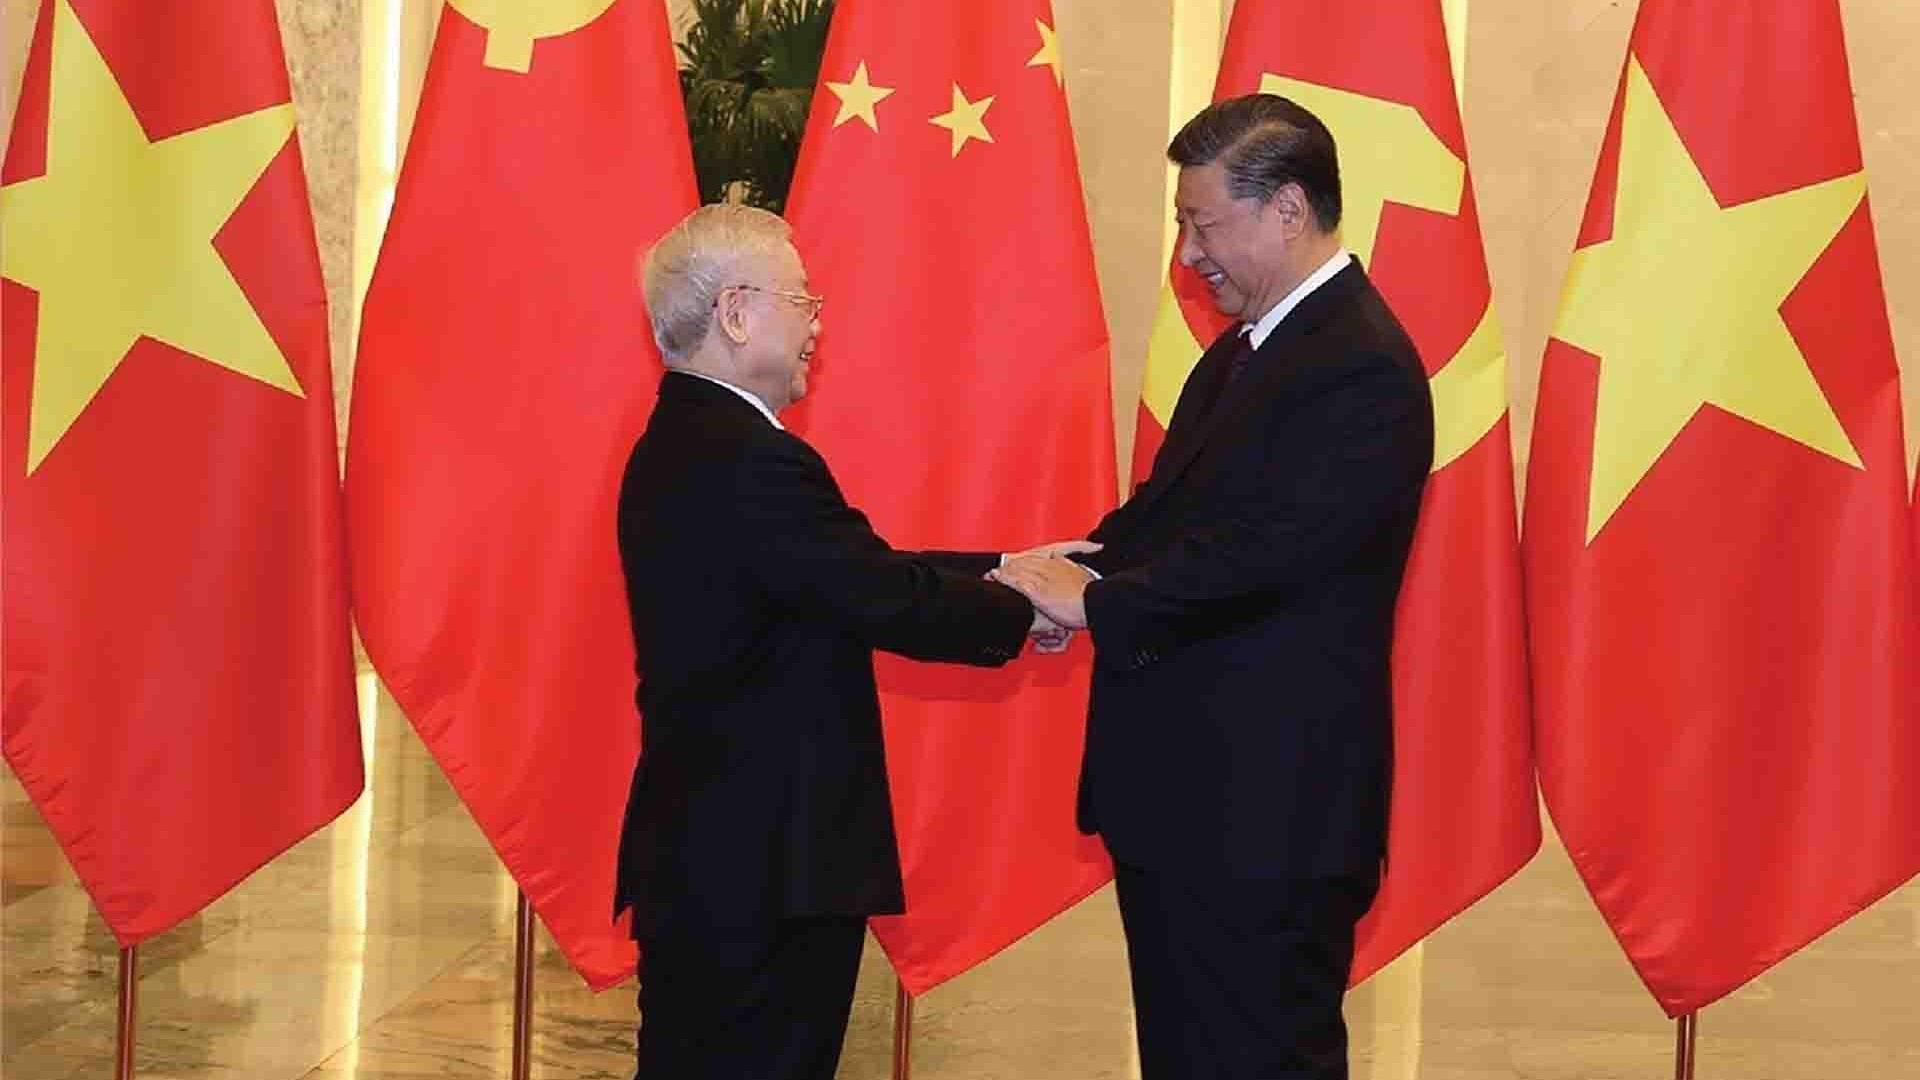 Ấn tượng sâu sắc về phong cách ngoại giao của Tổng Bí thư Nguyễn Phú Trọng qua chuyến thăm Trung Quốc